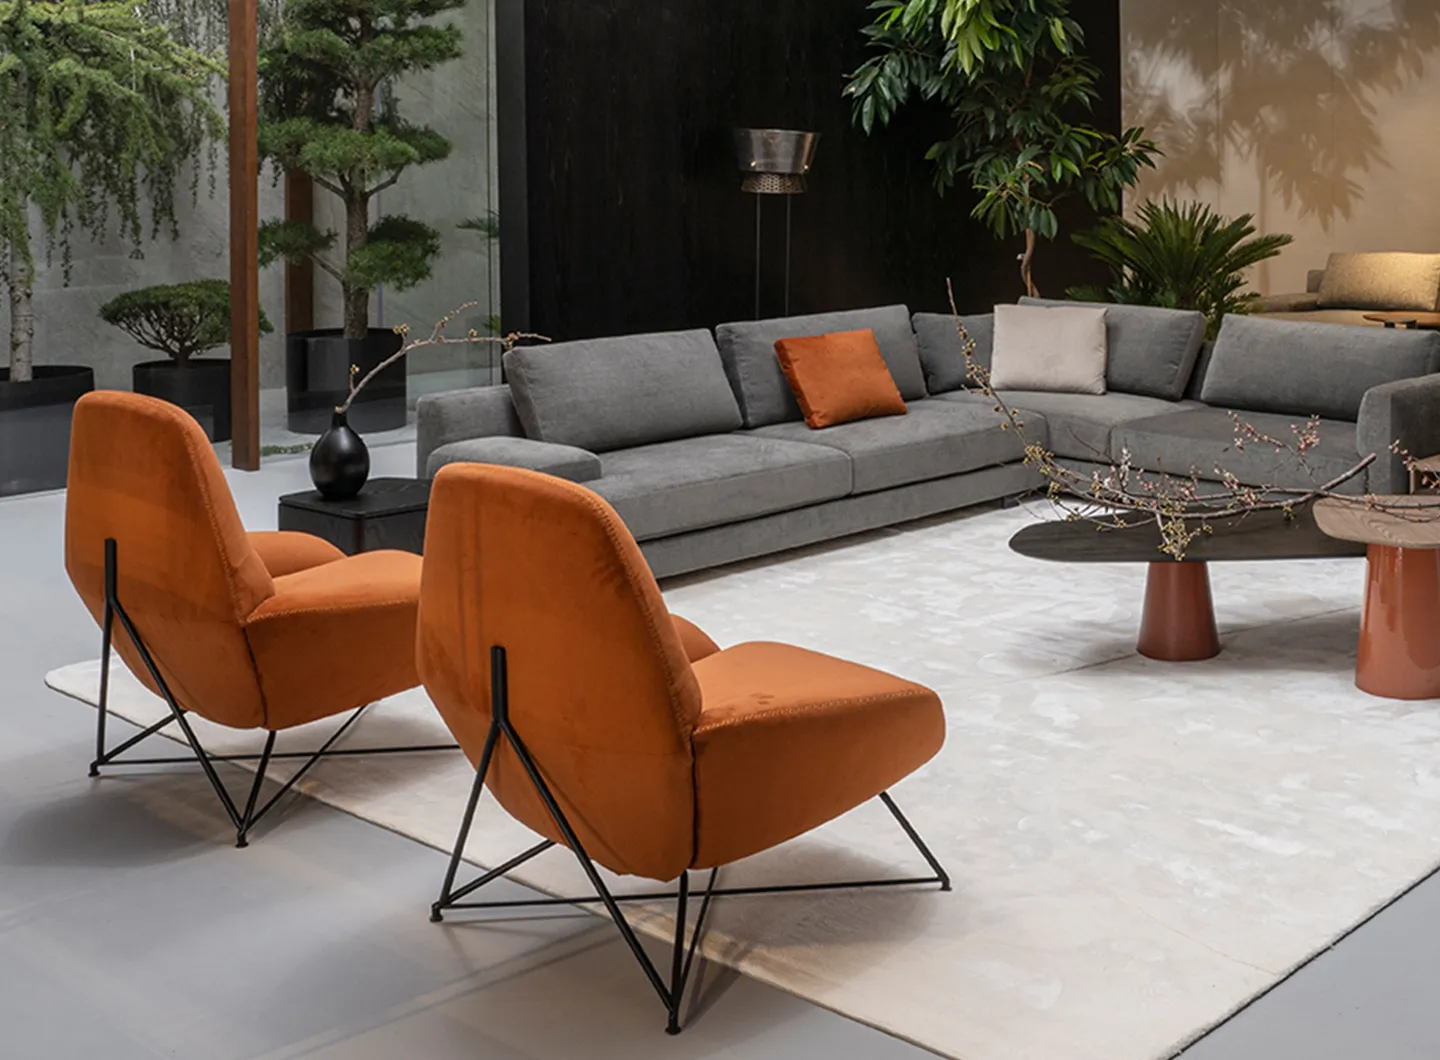 Corallina, Casa International 'Allover 2021' collection designed by Mauro Lipparini